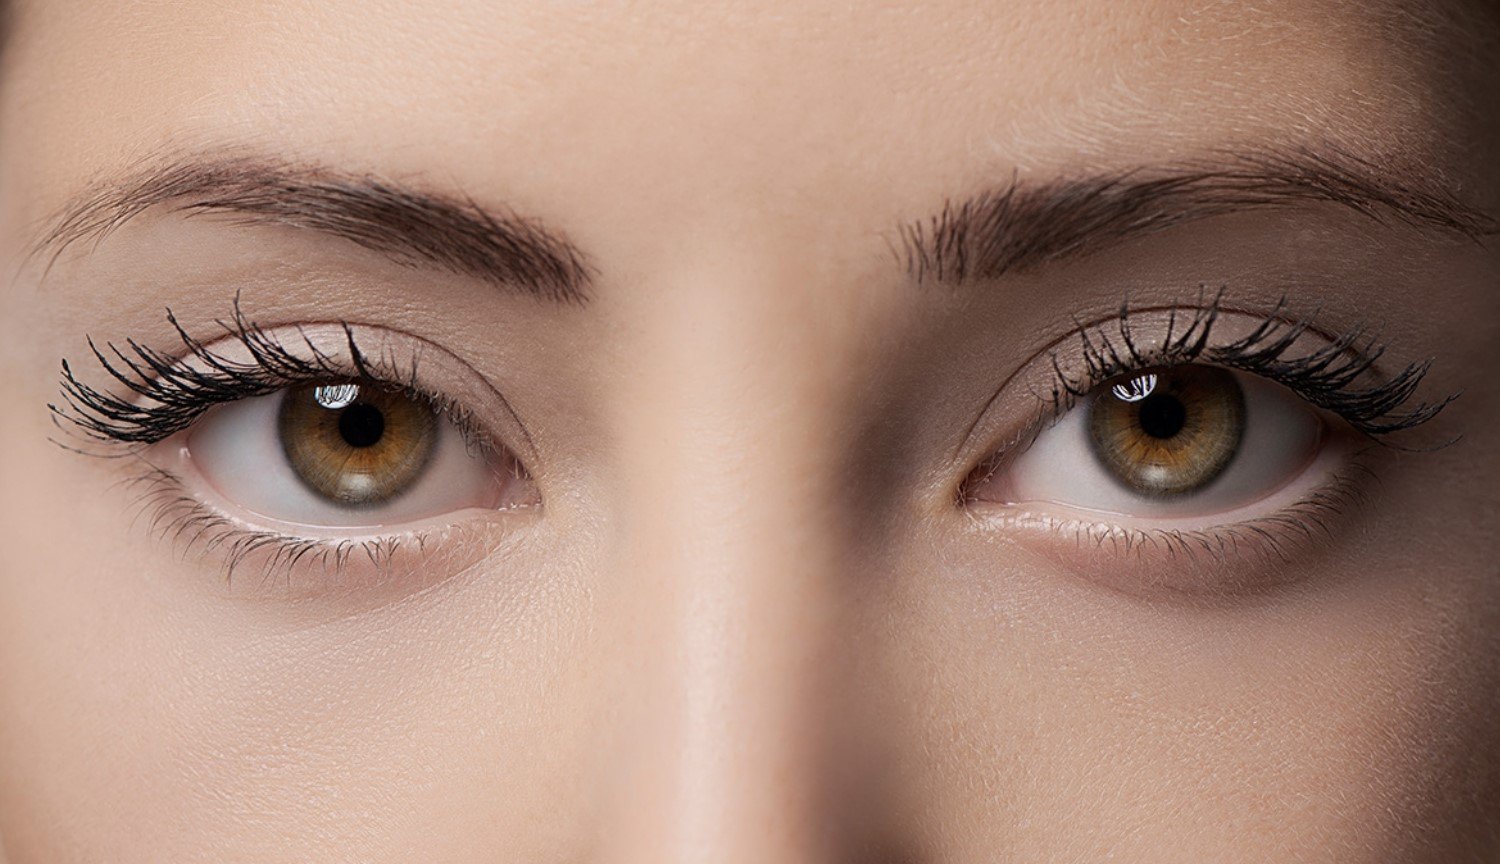 أطباء العيون بإجراء أول عملية جراحية للحفاظ على الرؤية مع مساعدة من الجينات